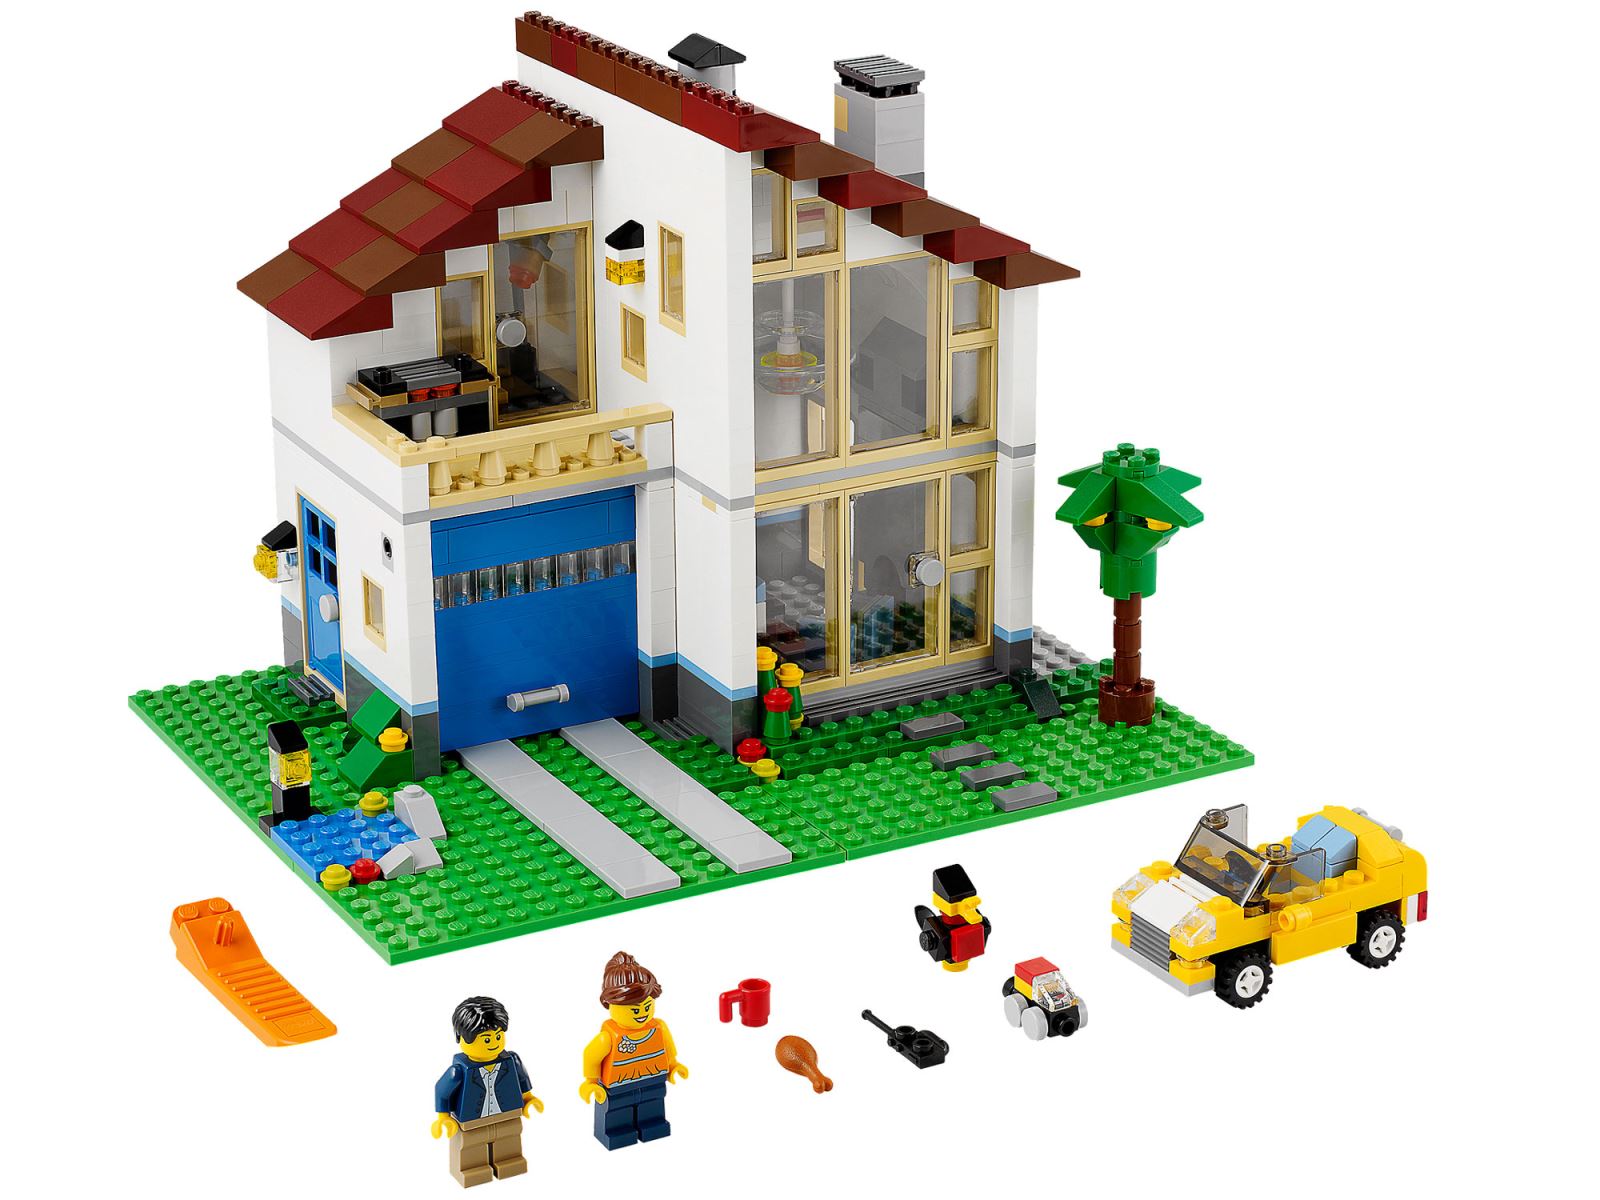 Xây nhà đơn giản như chơi Lego: Bạn muốn xây nhà đơn giản mà vẫn đẹp, hãy thử trải nghiệm cảm giác xây dựng nhà như chơi Lego. Với những khối xếp Lego đơn giản, bạn có thể dễ dàng tạo ra một ngôi nhà ấn tượng. Hãy cùng xem hình ảnh để khám phá thêm.